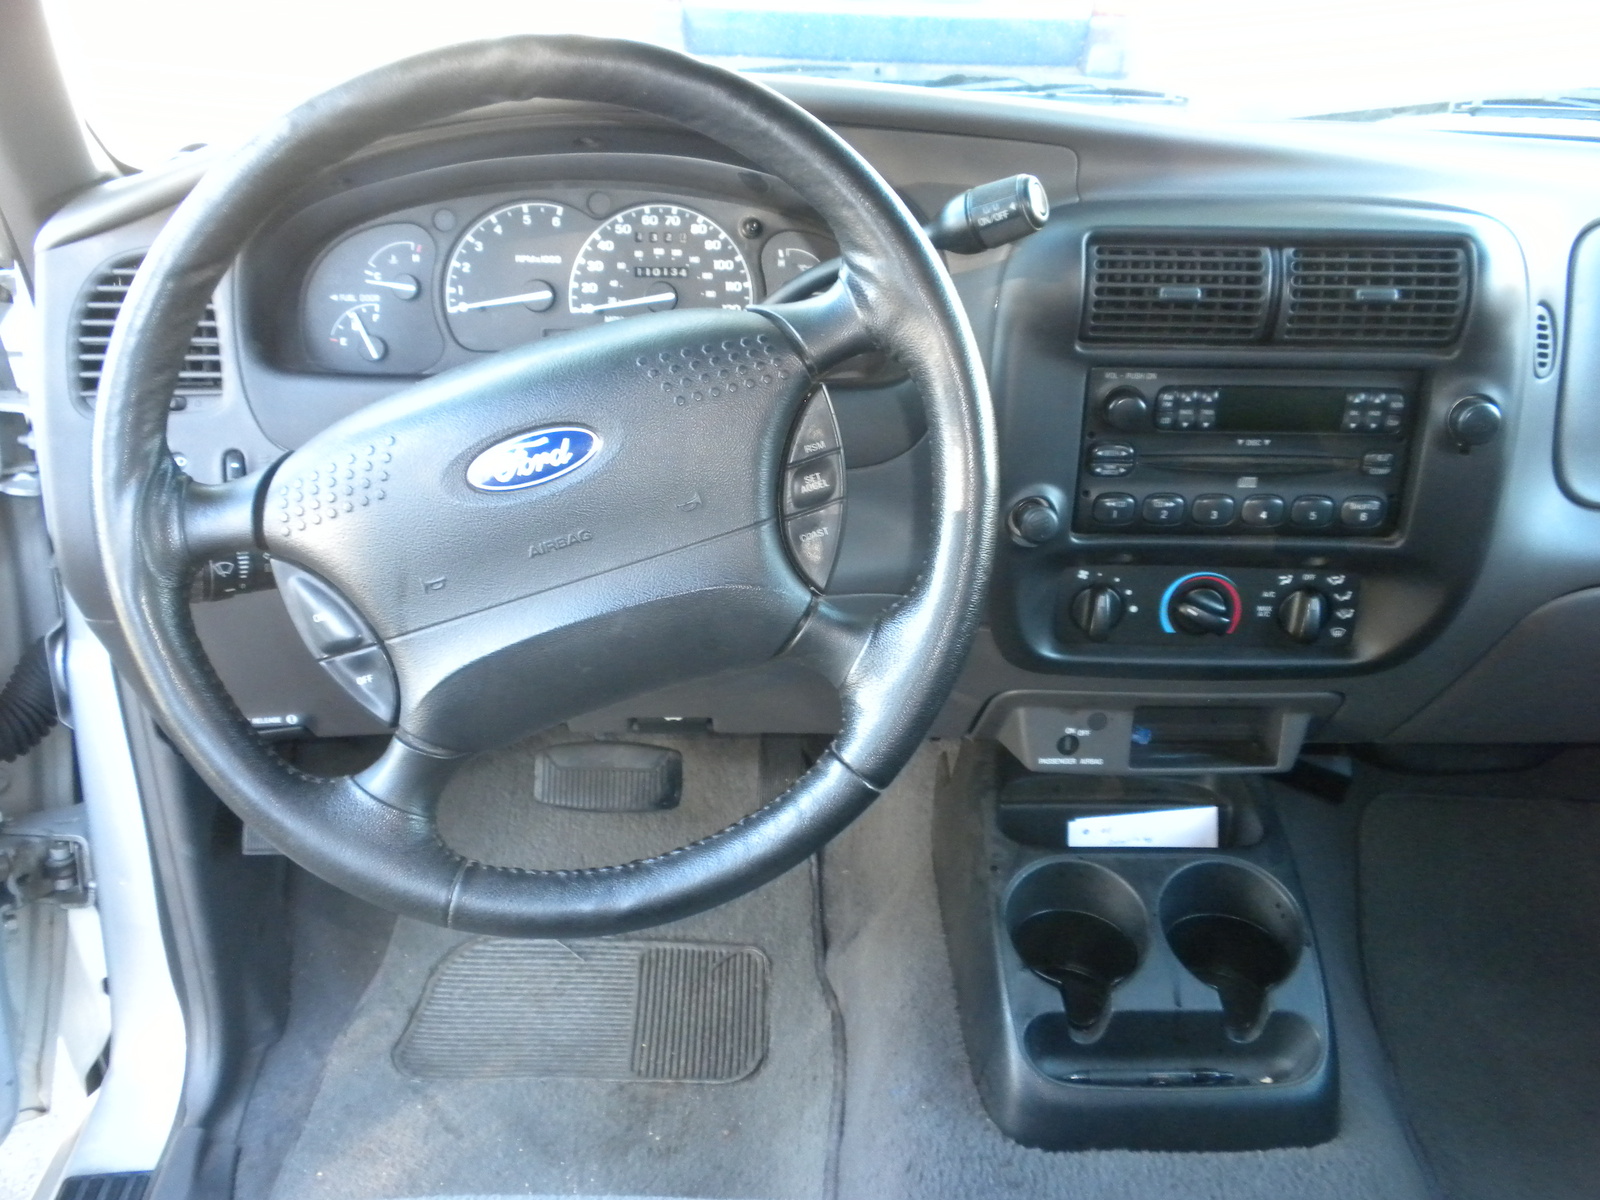 2001 Ford ranger interior